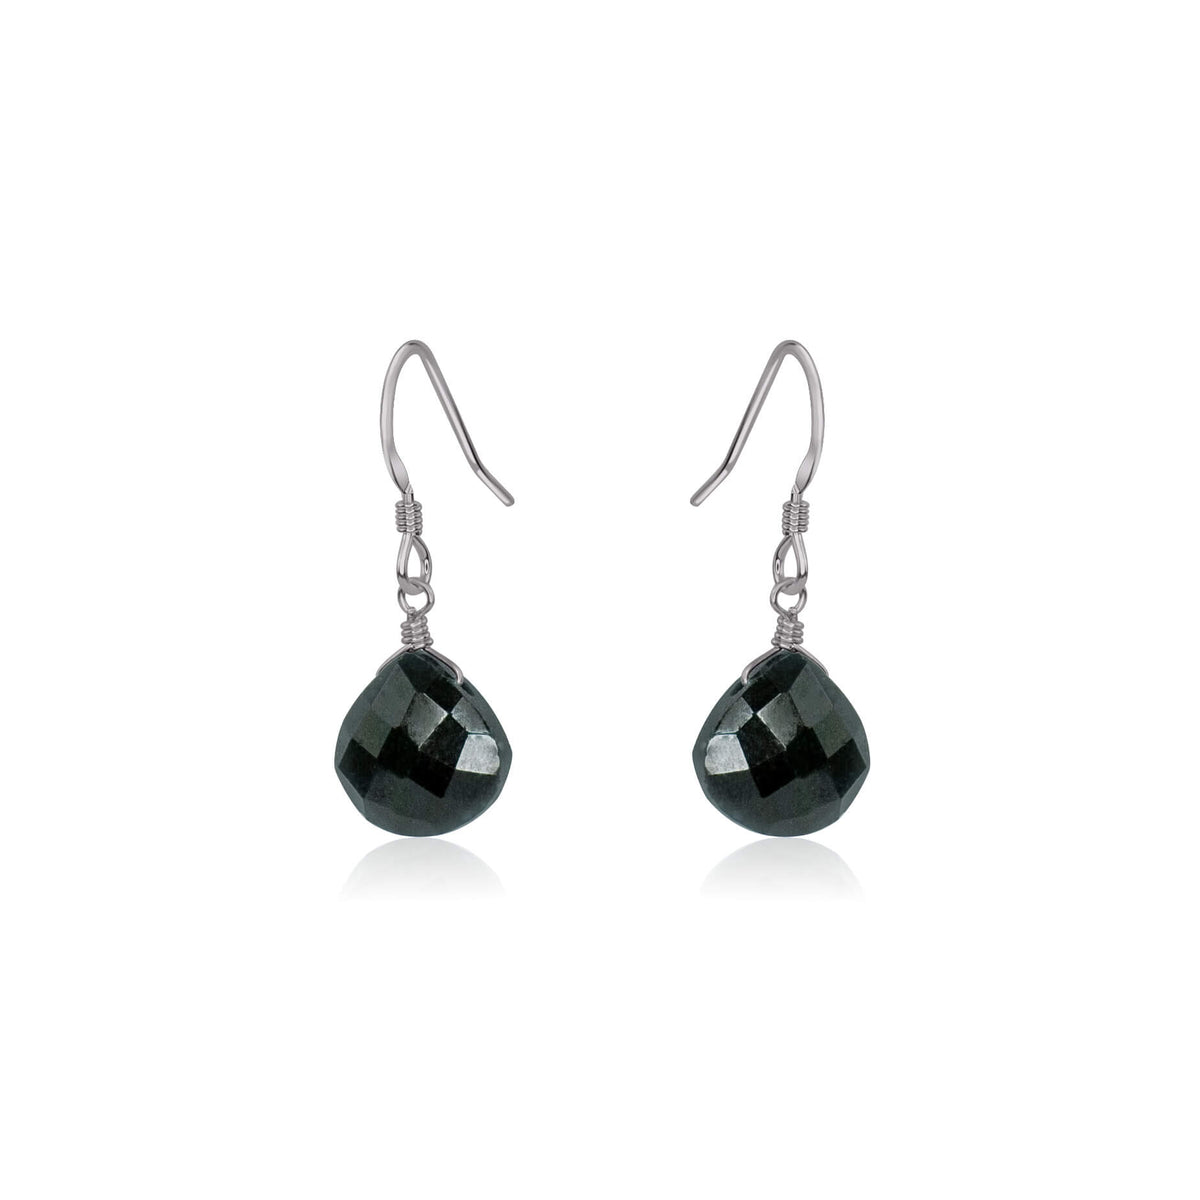 Teardrop Earrings - Black Tourmaline - Stainless Steel - Luna Tide Handmade Jewellery